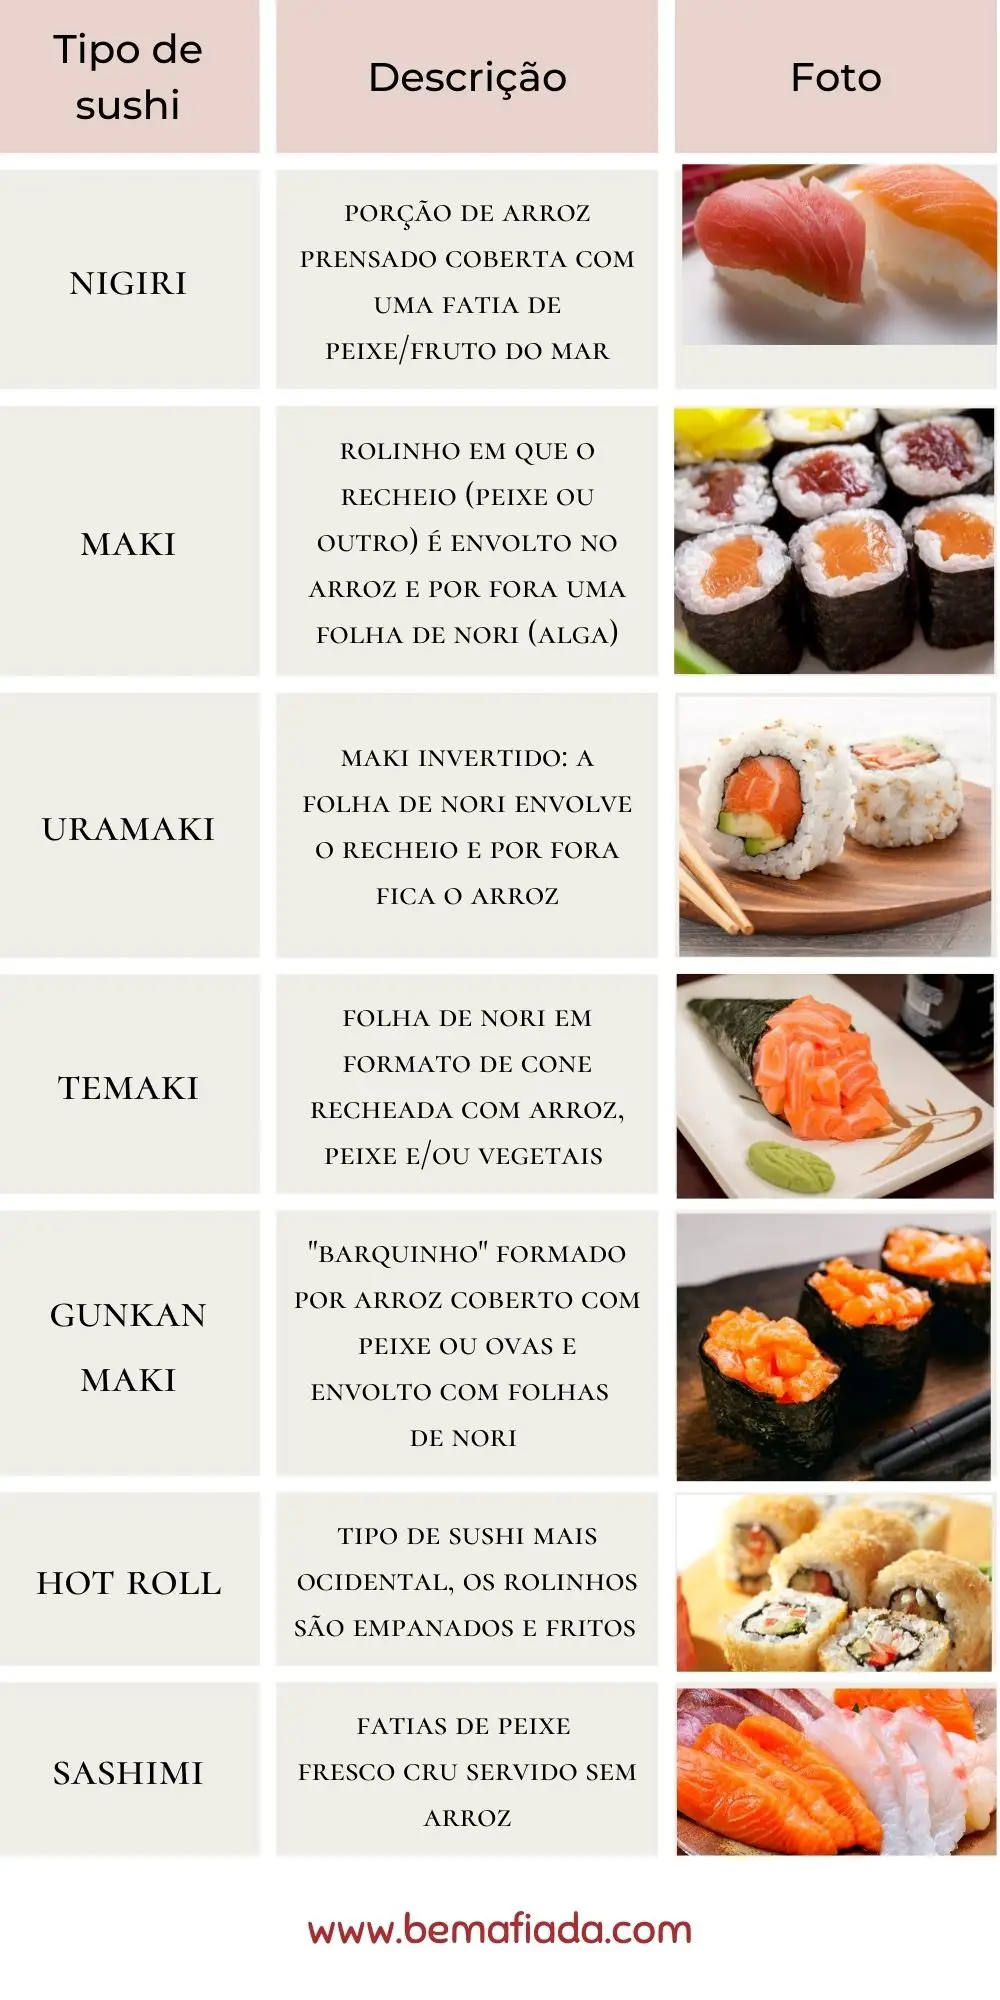 Tabela com os principais tipos de sushi